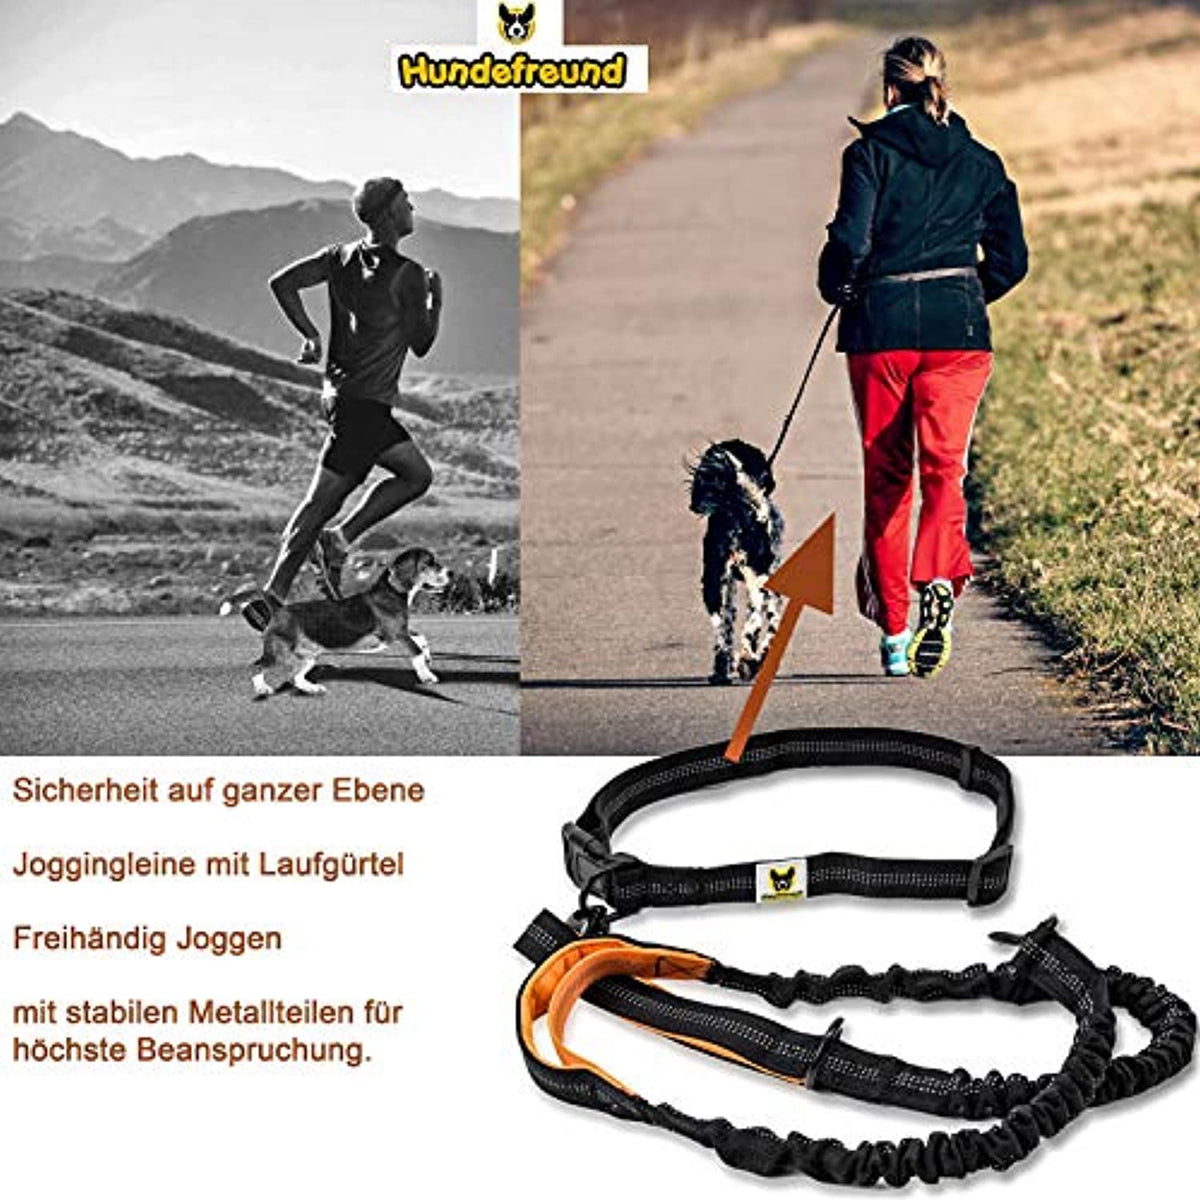 Hundefreund Joggingleine für große Hunde ab 15 kg Orange Laufleine